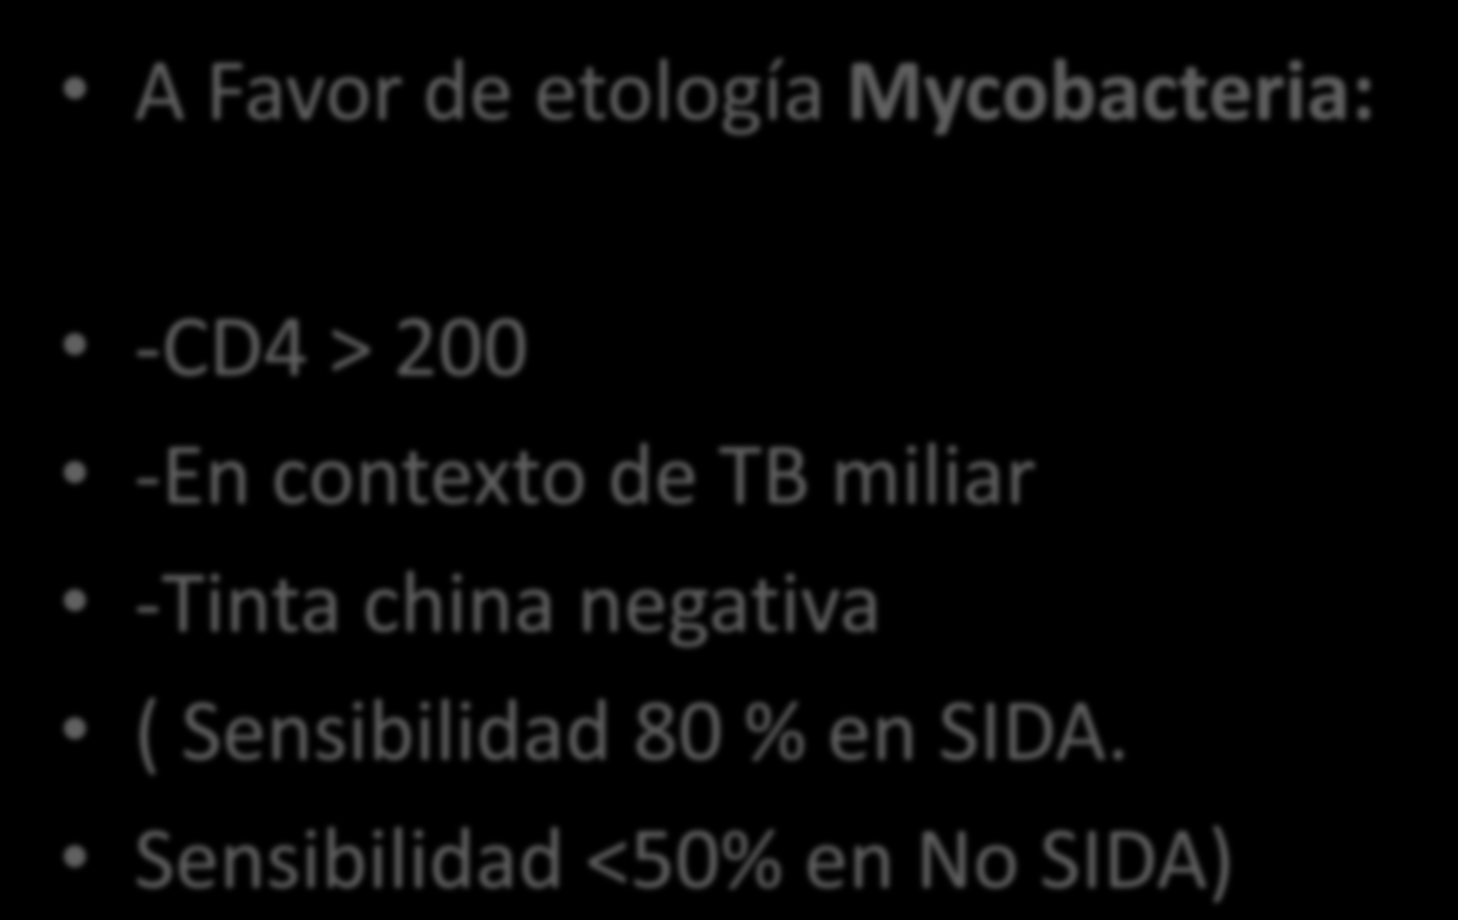 A Favor de etología Mycobacteria: -CD4 > 200 -En contexto de TB miliar